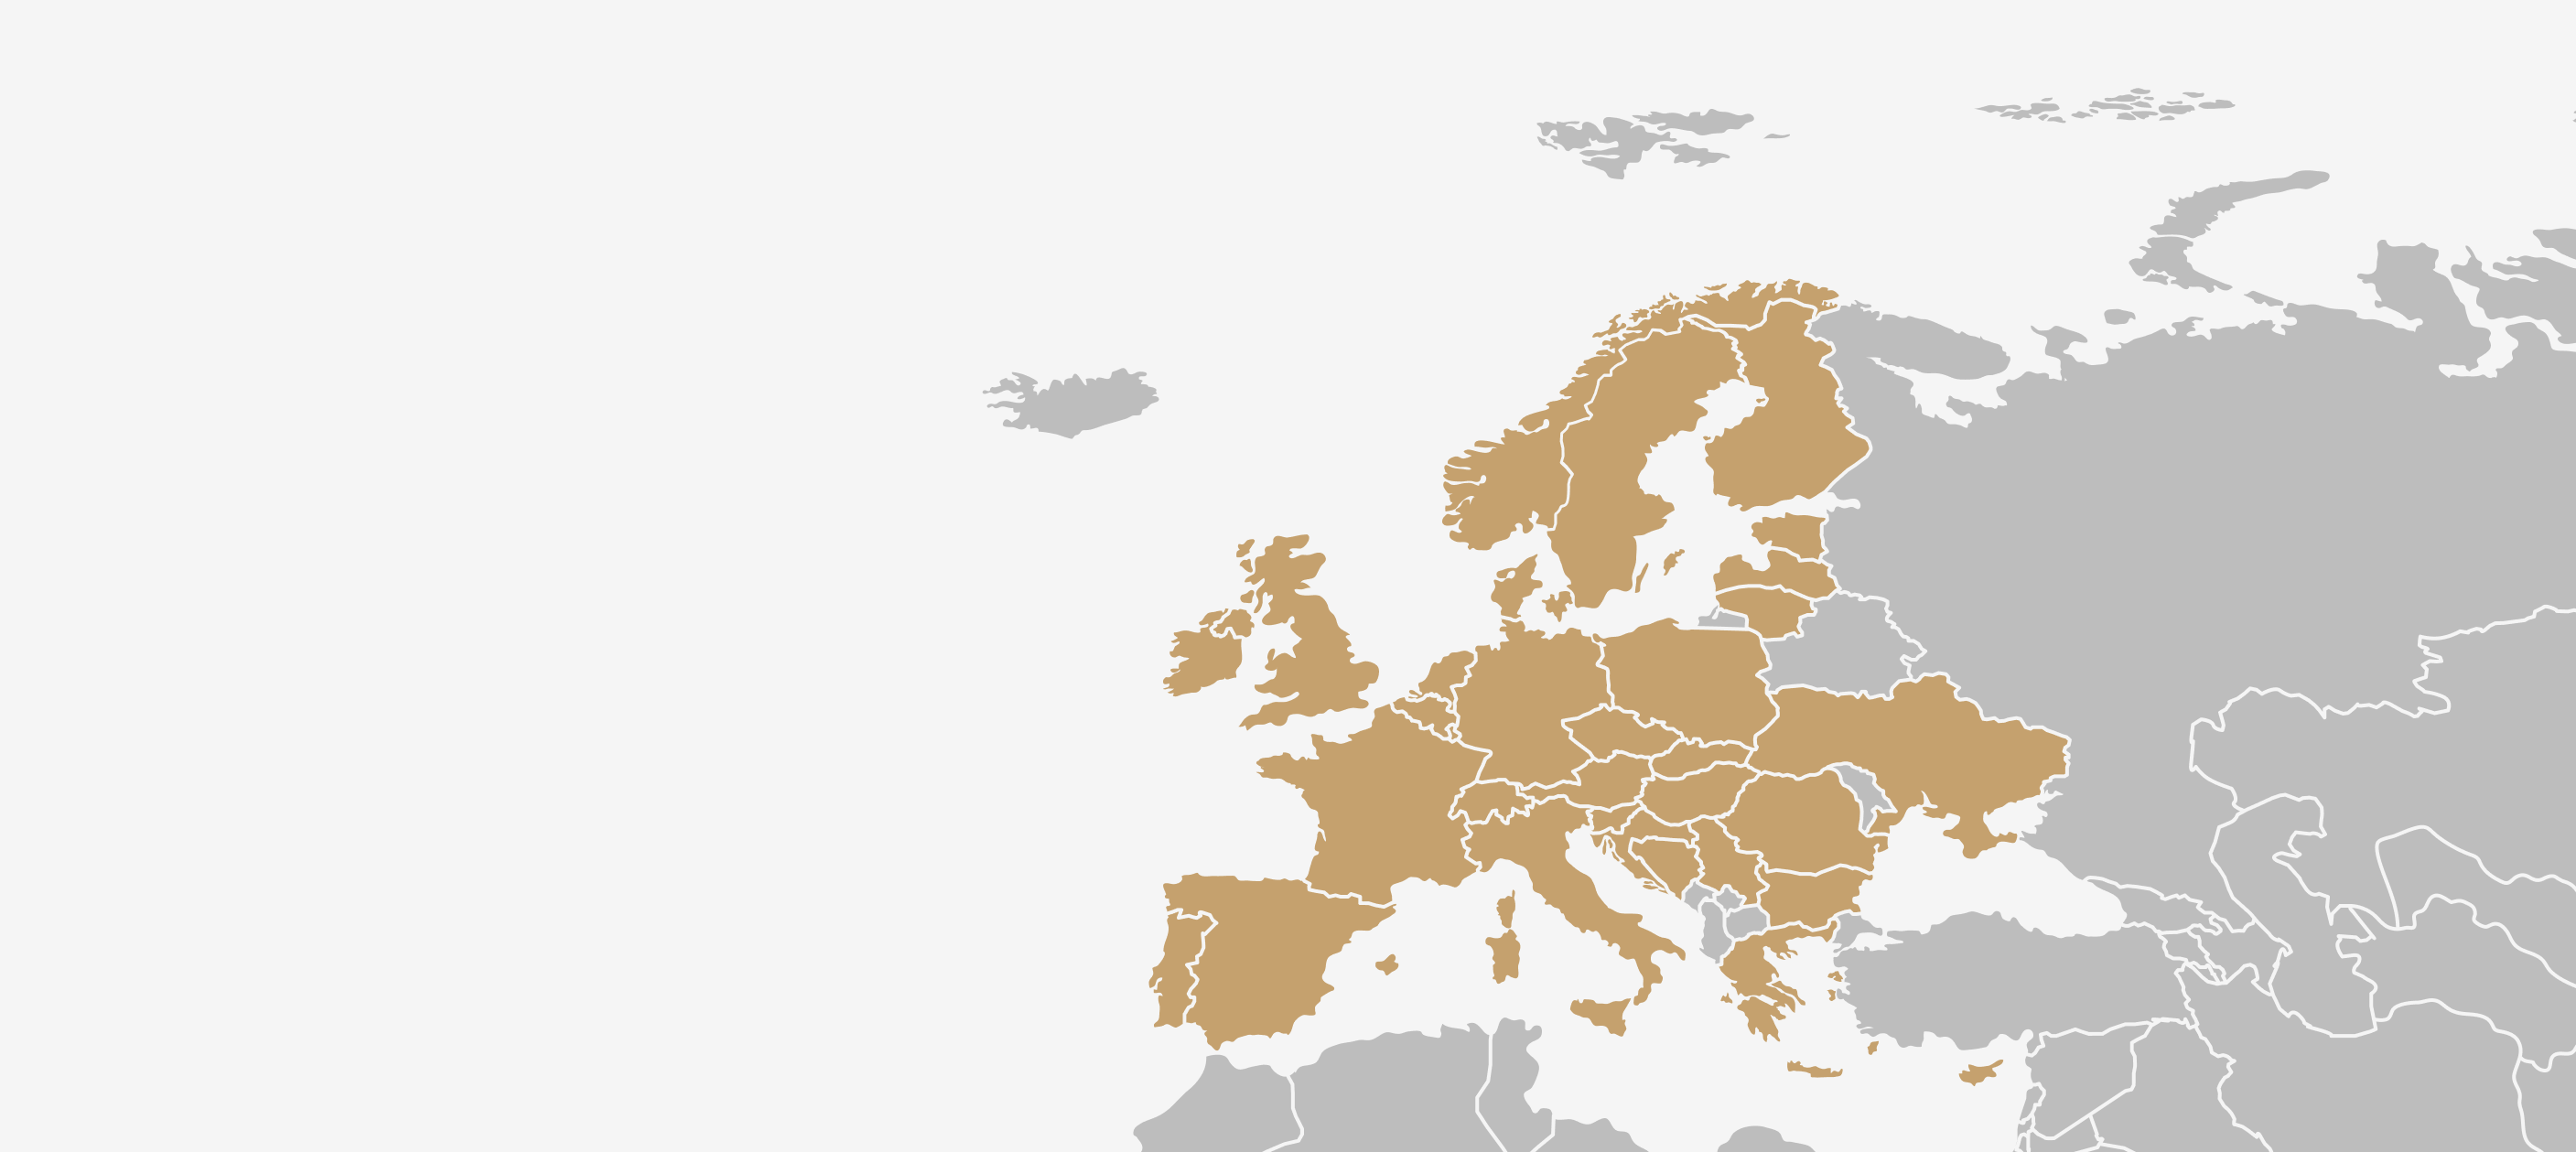 Harmonelo - Siamo presenti in 34 paesi europei... Ma i nostri obbiettivi sono molto più alti!